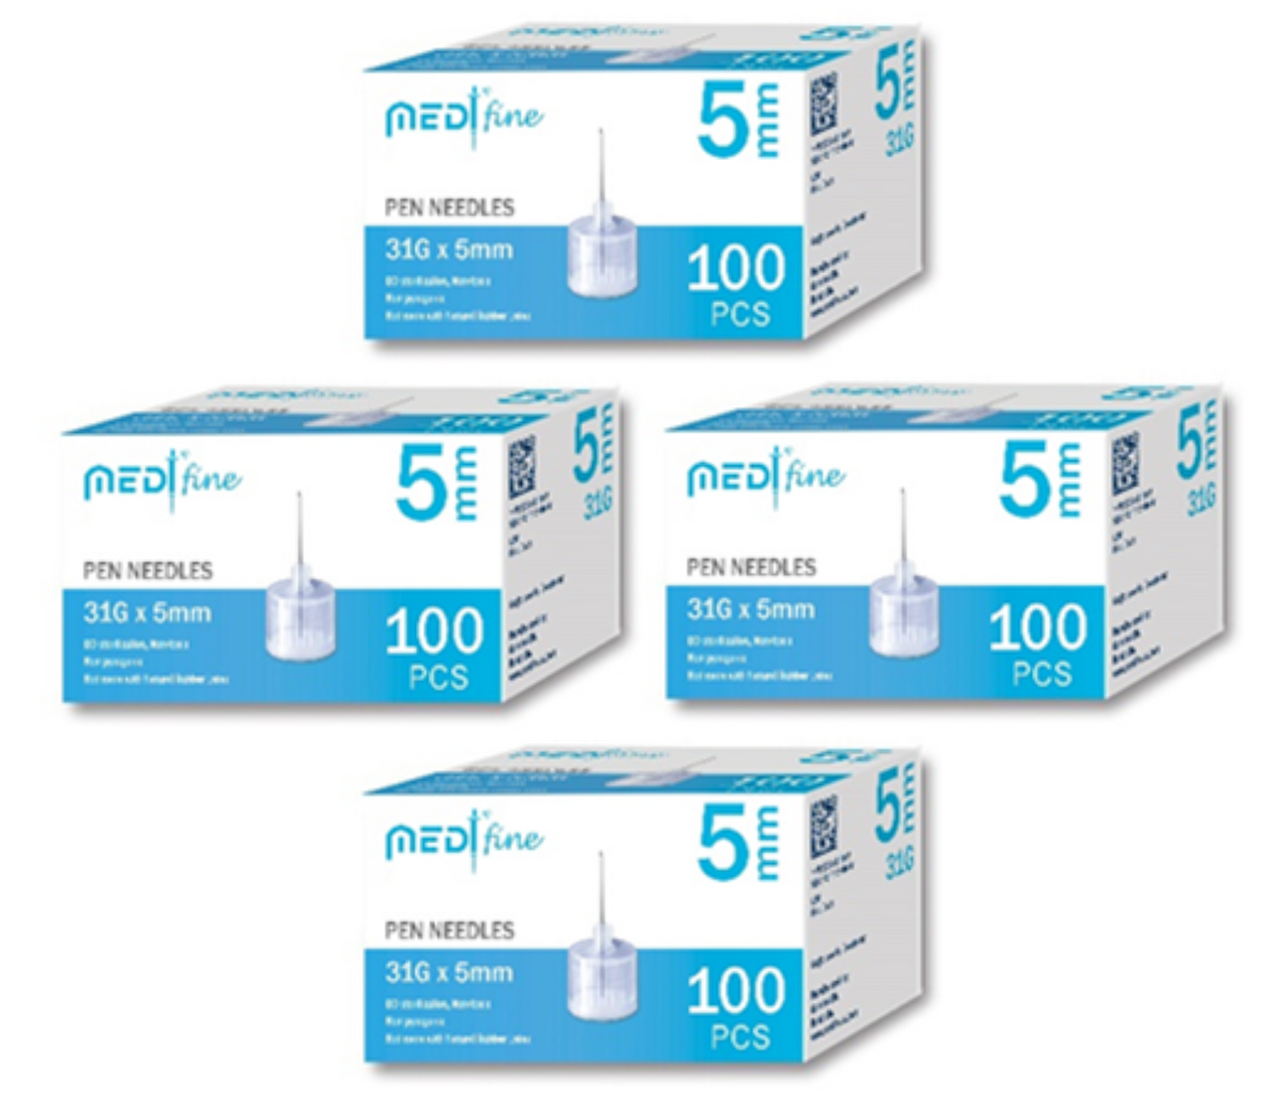 MedtFine Insulin Pen Needles (31G 5mm) 400 pieces